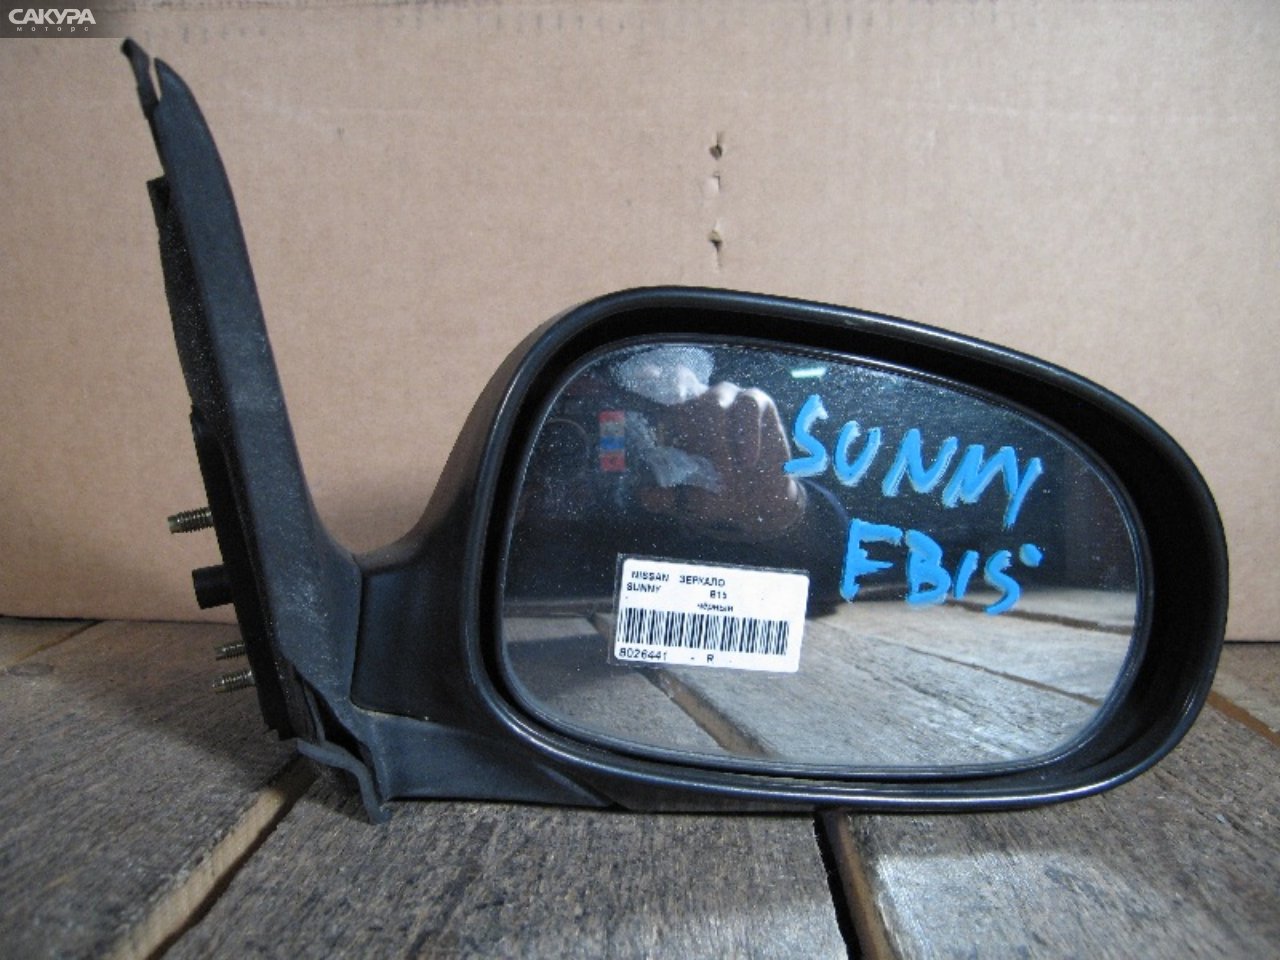 Зеркало боковое правое Nissan Sunny B15: купить в Сакура Абакан.